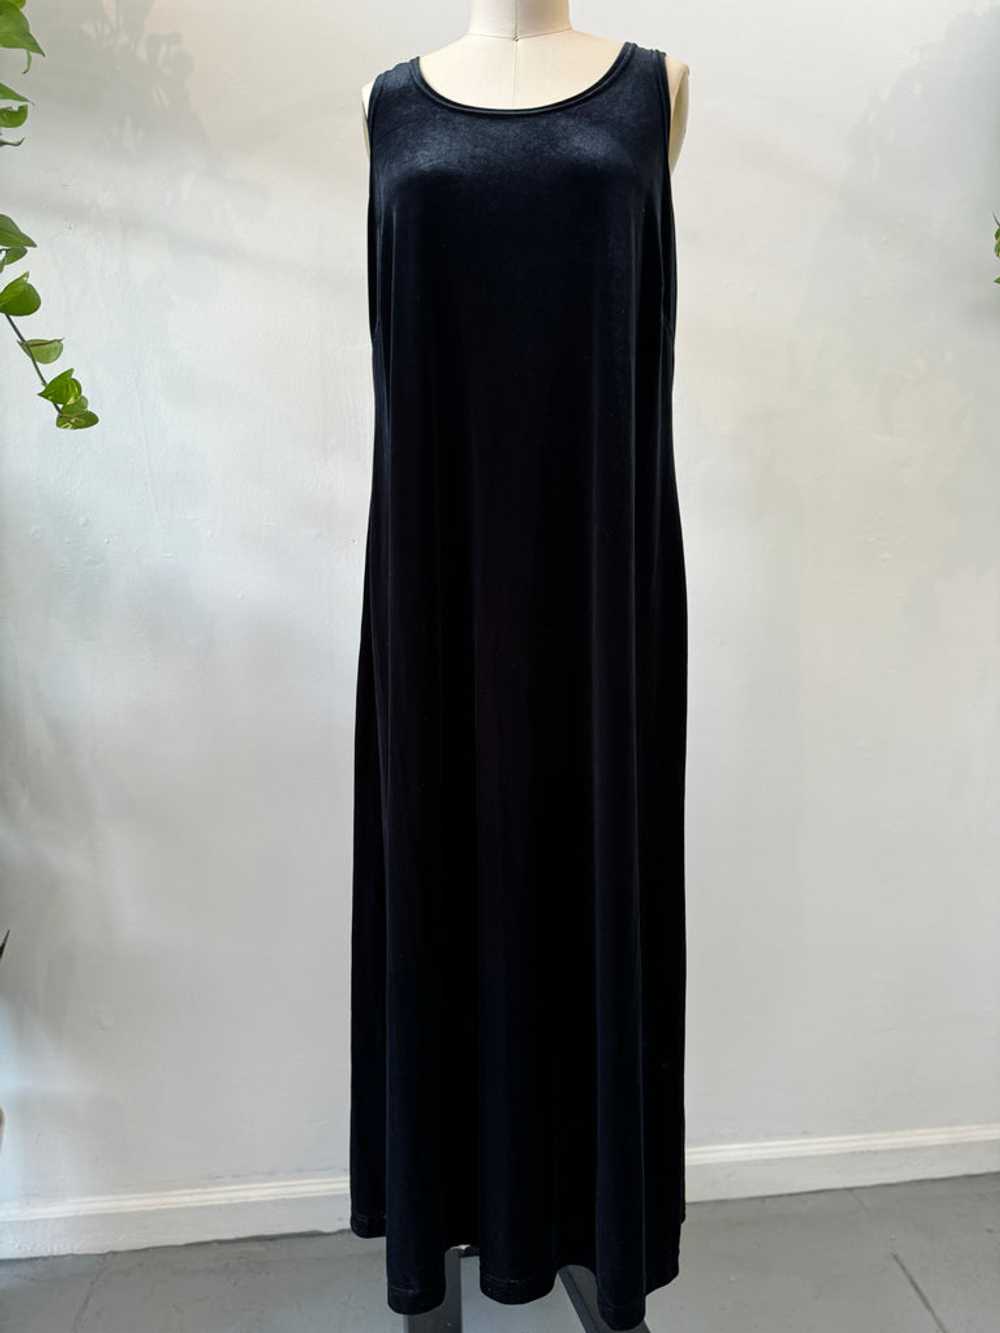 Vintage long velvet dress - image 2